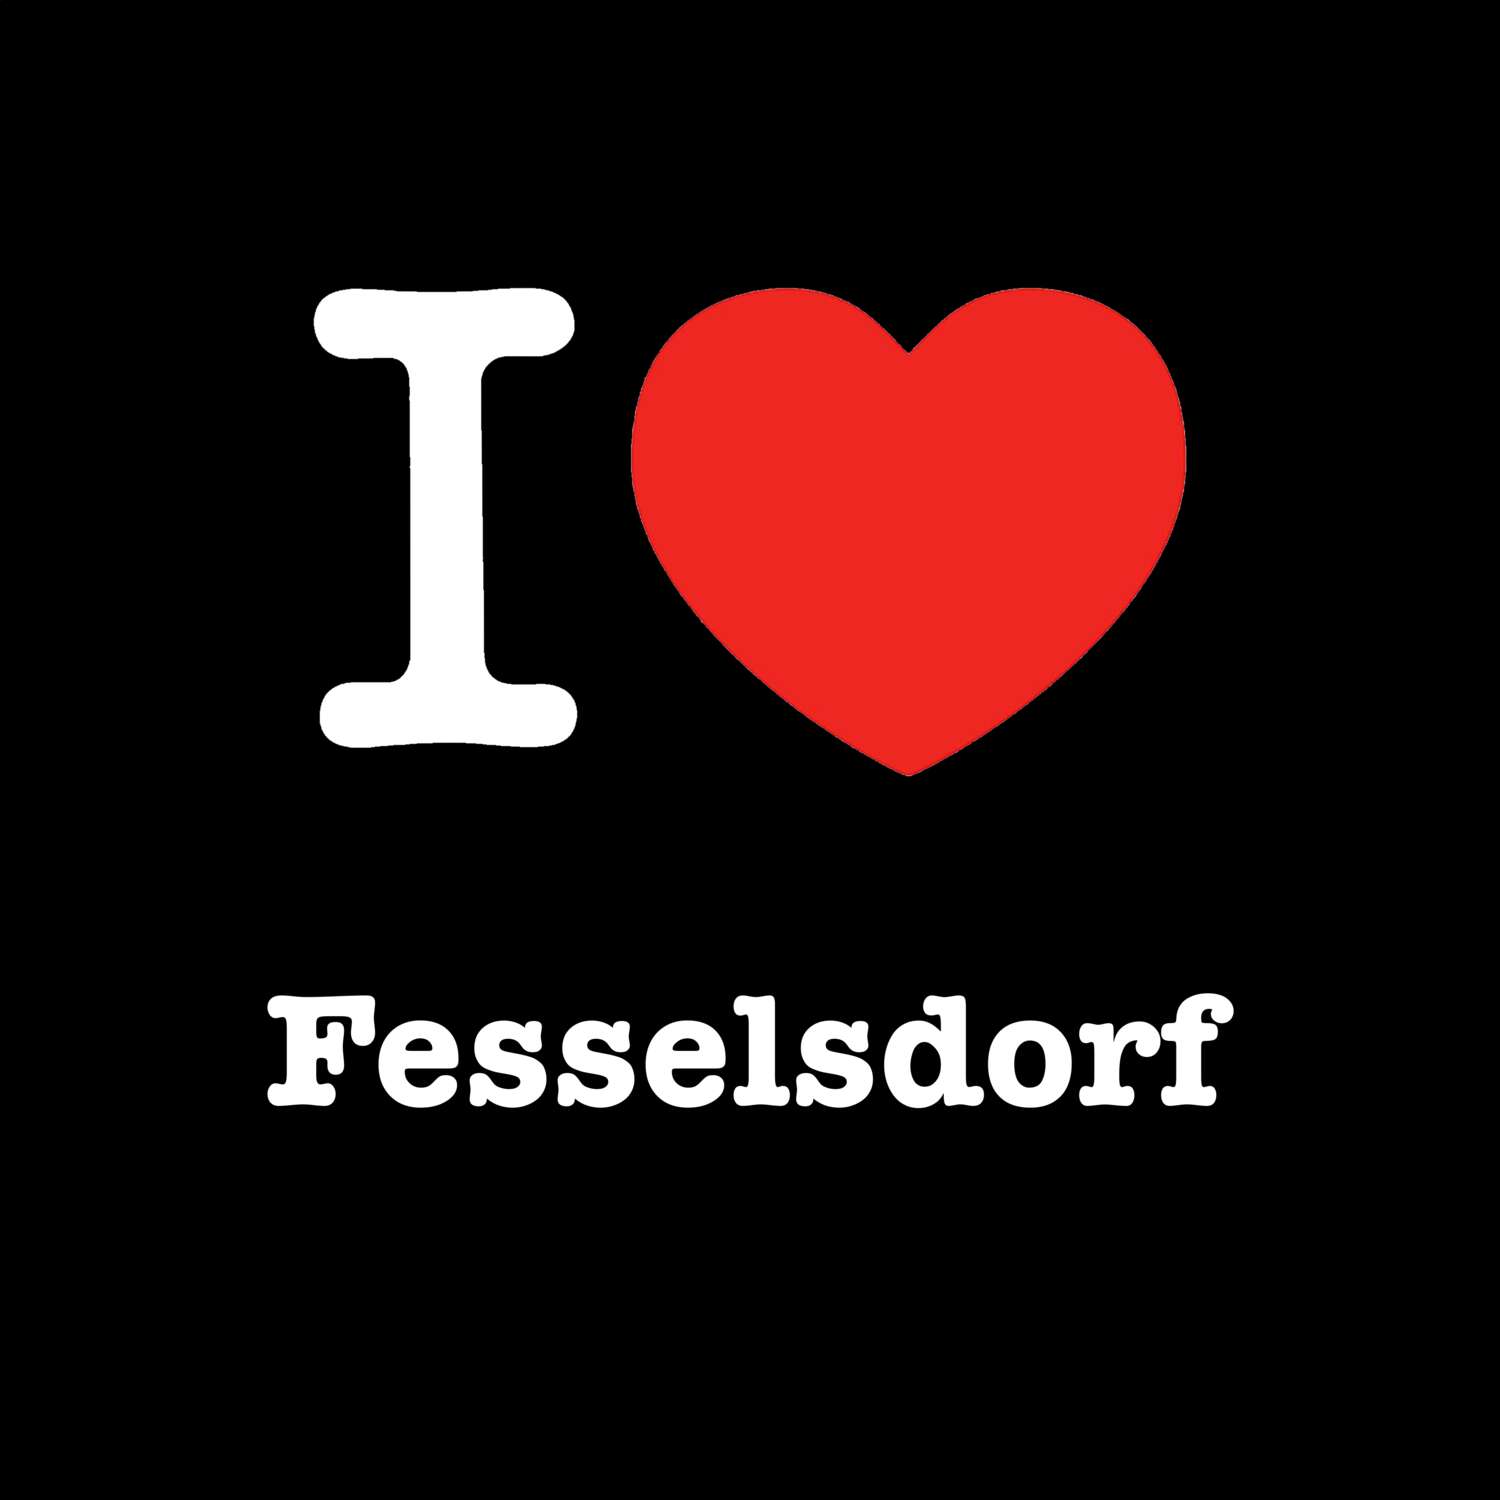 Fesselsdorf T-Shirt »I love«